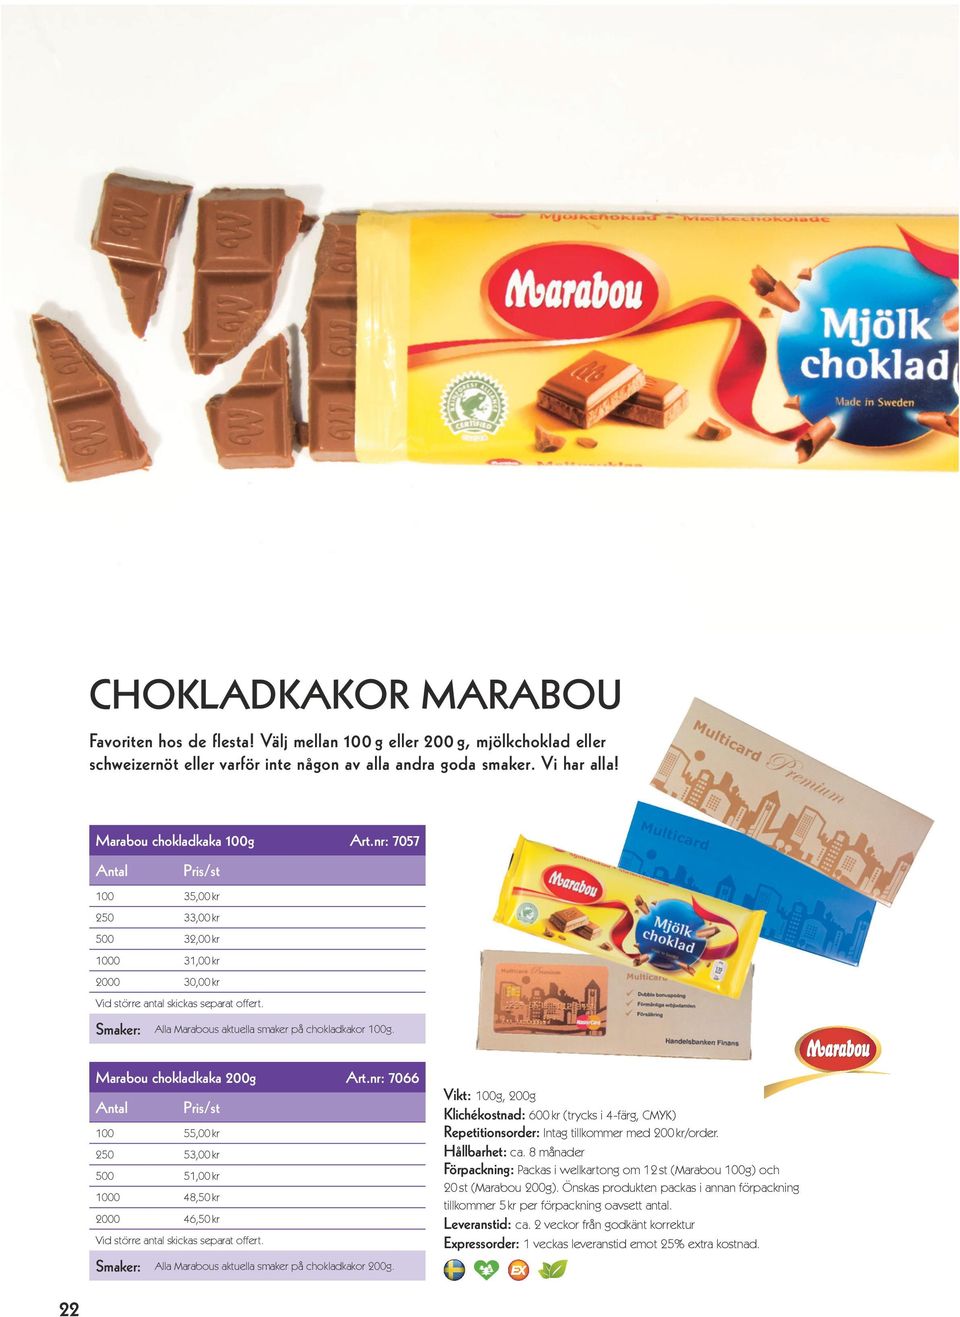 Marabou chokladkaka 200g Art.nr: 7066 100 55,00 kr 250 53,00 kr 500 51,00 kr 1000 48,50 kr 2000 46,50 kr Smaker: Alla Marabous aktuella smaker på chokladkakor 200g.